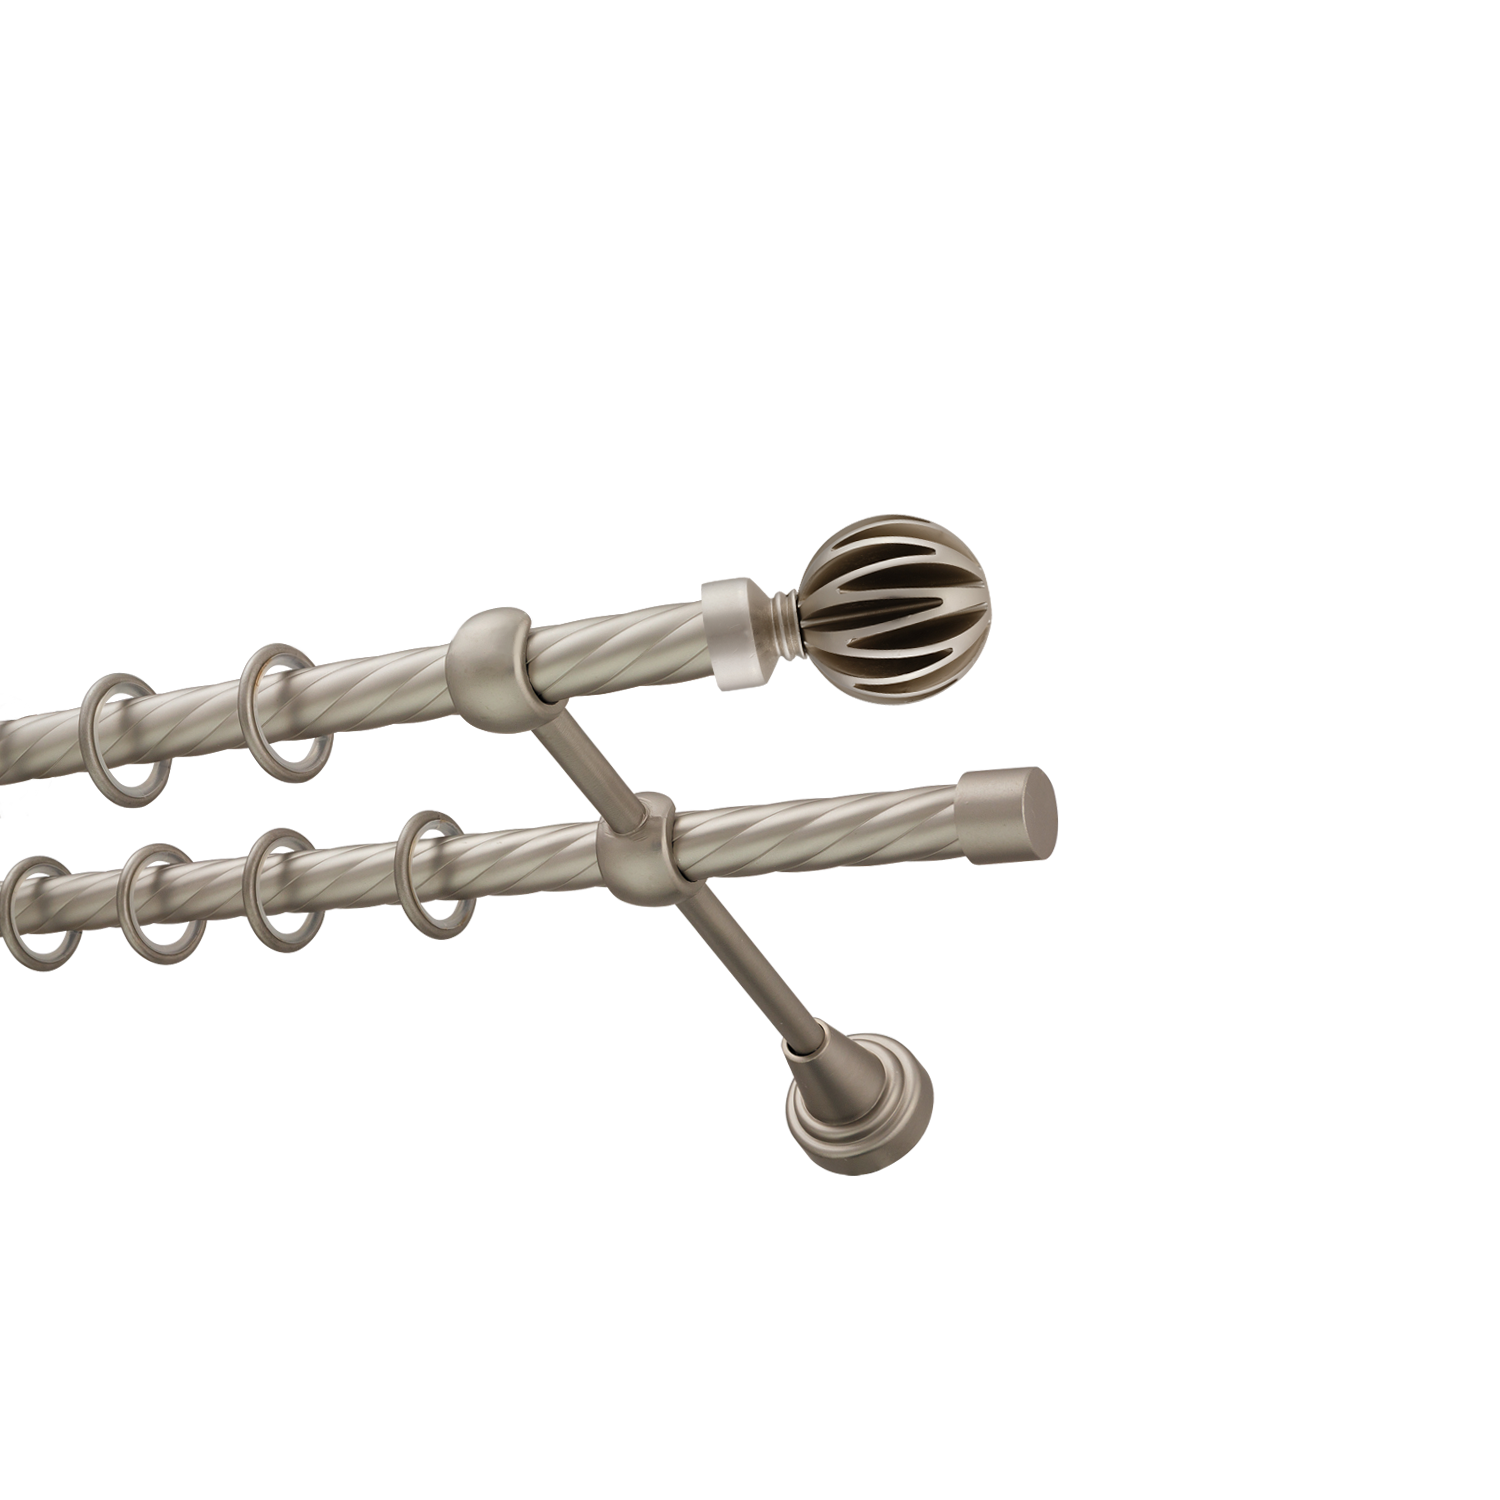 Металлический карниз для штор Шафран, двухрядный 16/16 мм, сталь, витая штанга, длина 160 см